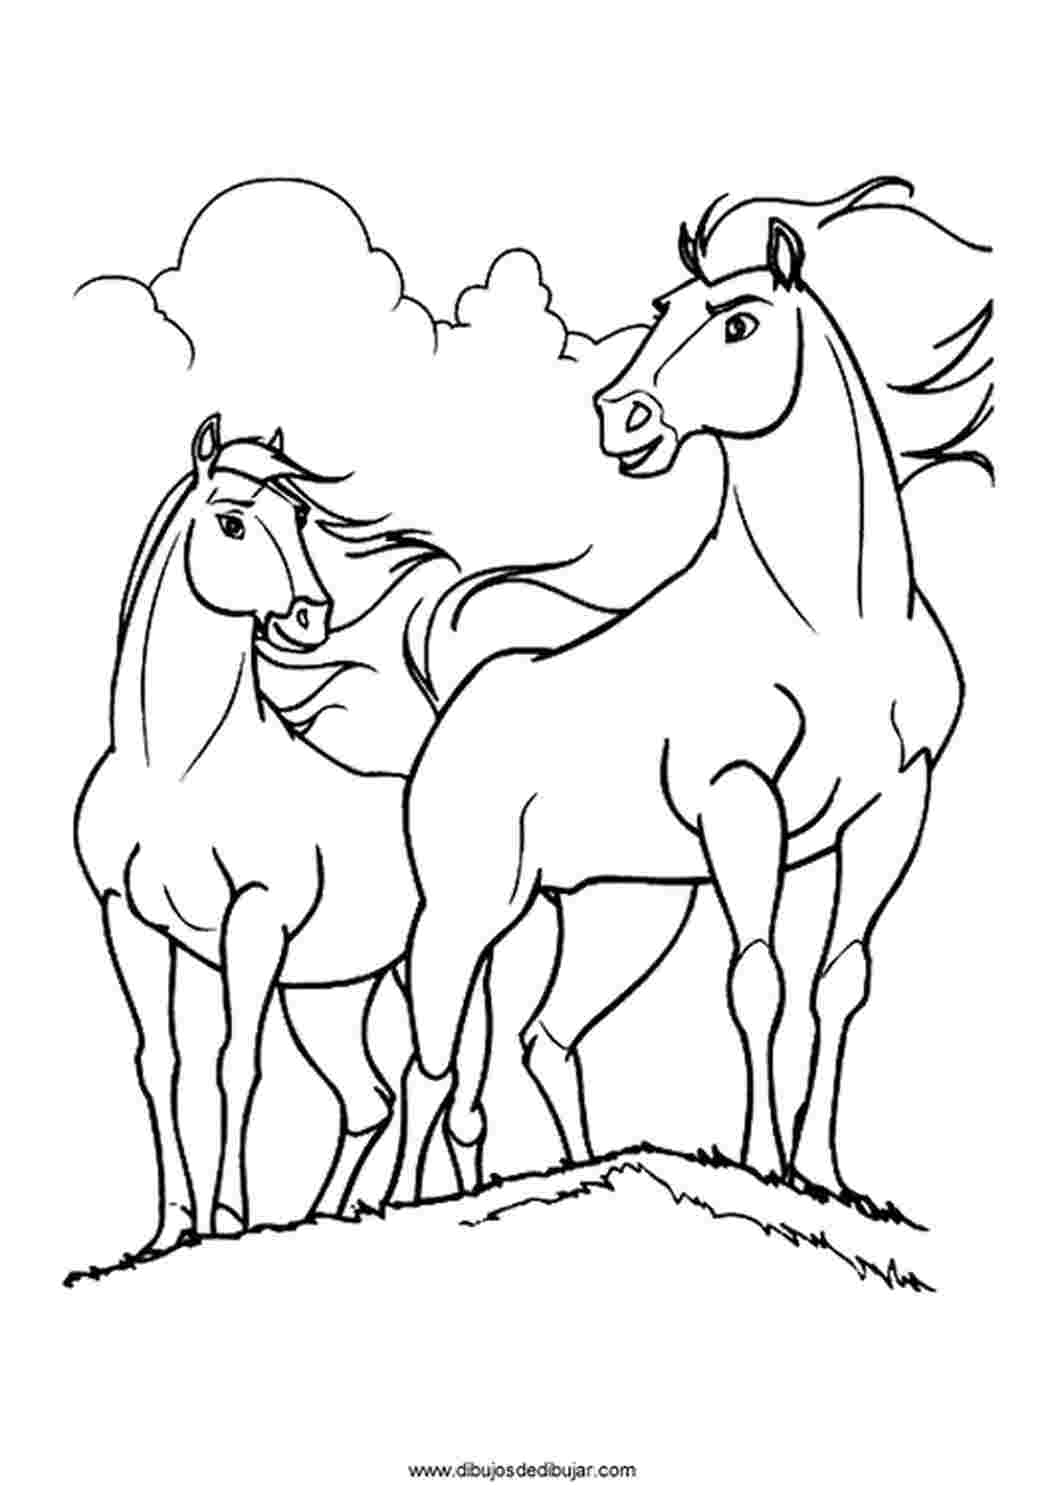 Распечатать раскраски лошади и кони